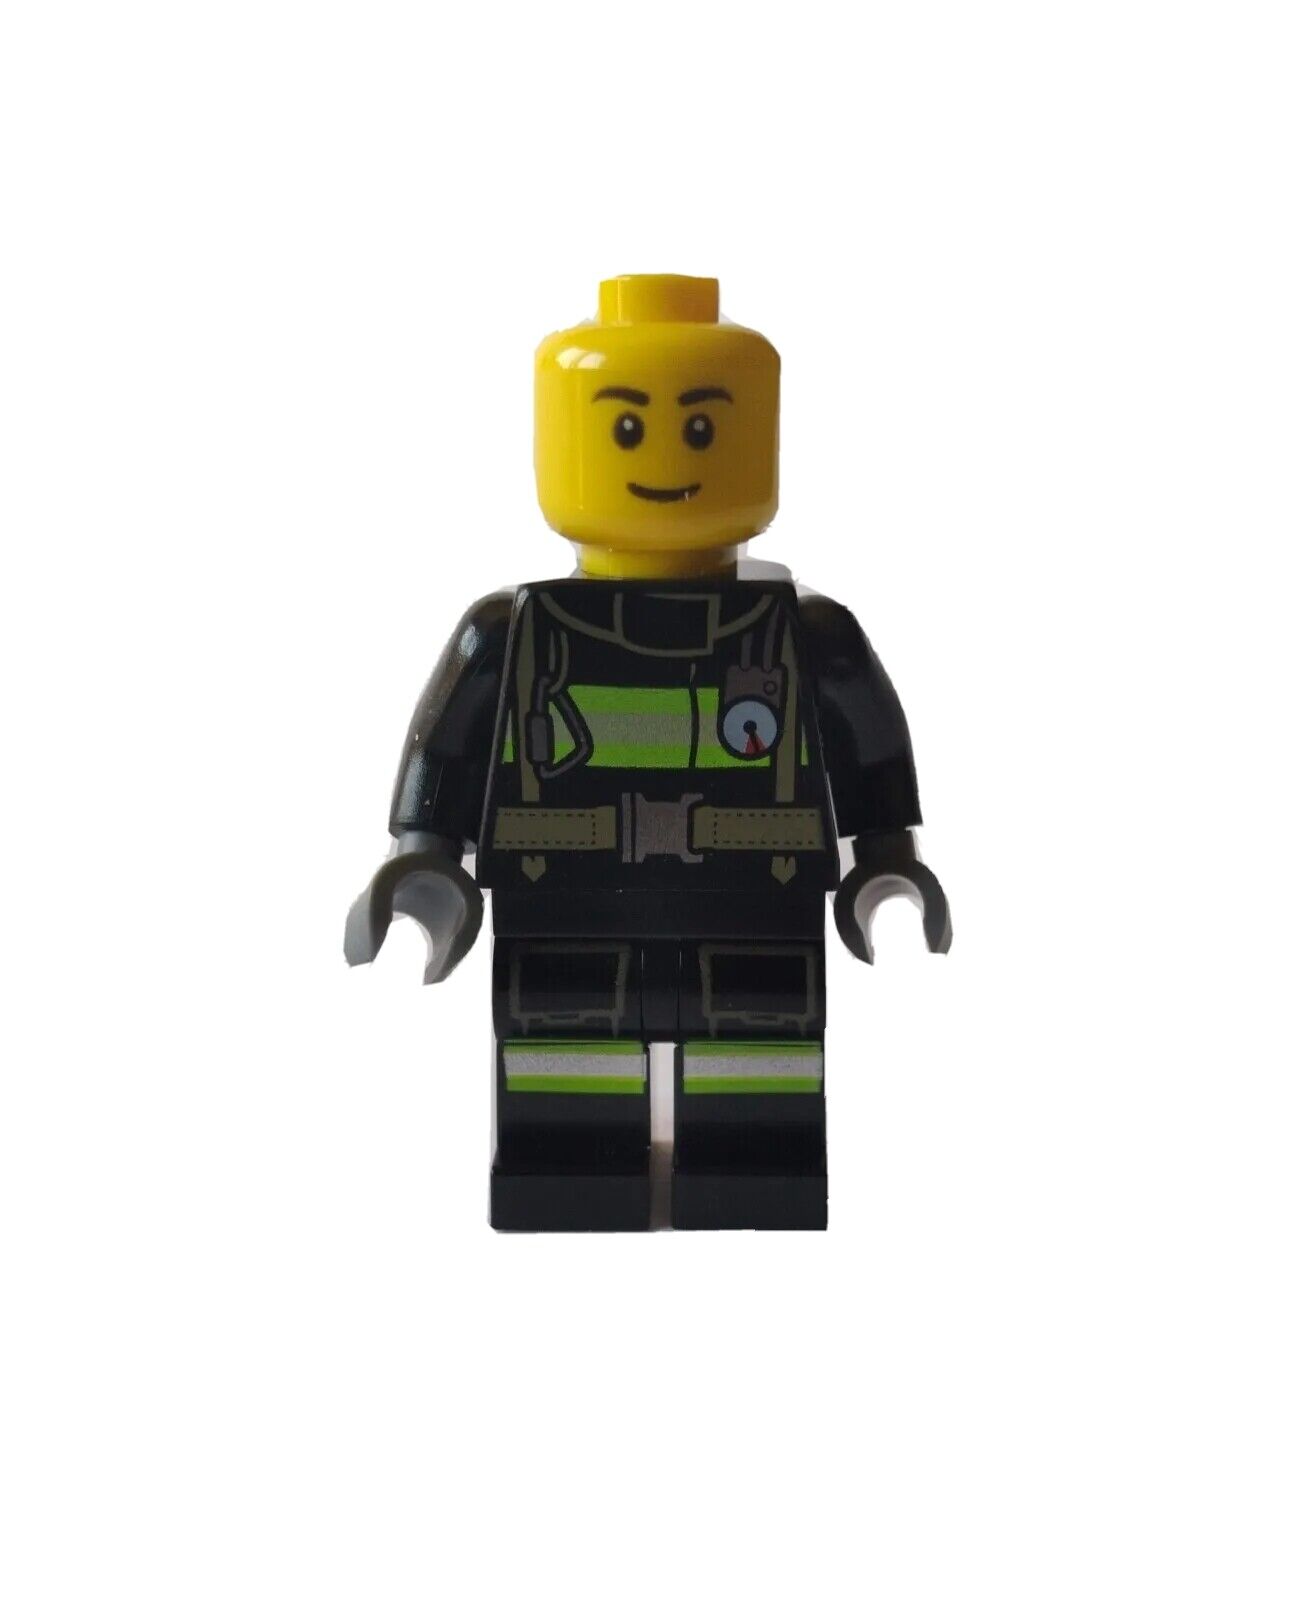 LEGO Minifigure Blaze Firefighter 70813 The LEGO Movie Minifigure